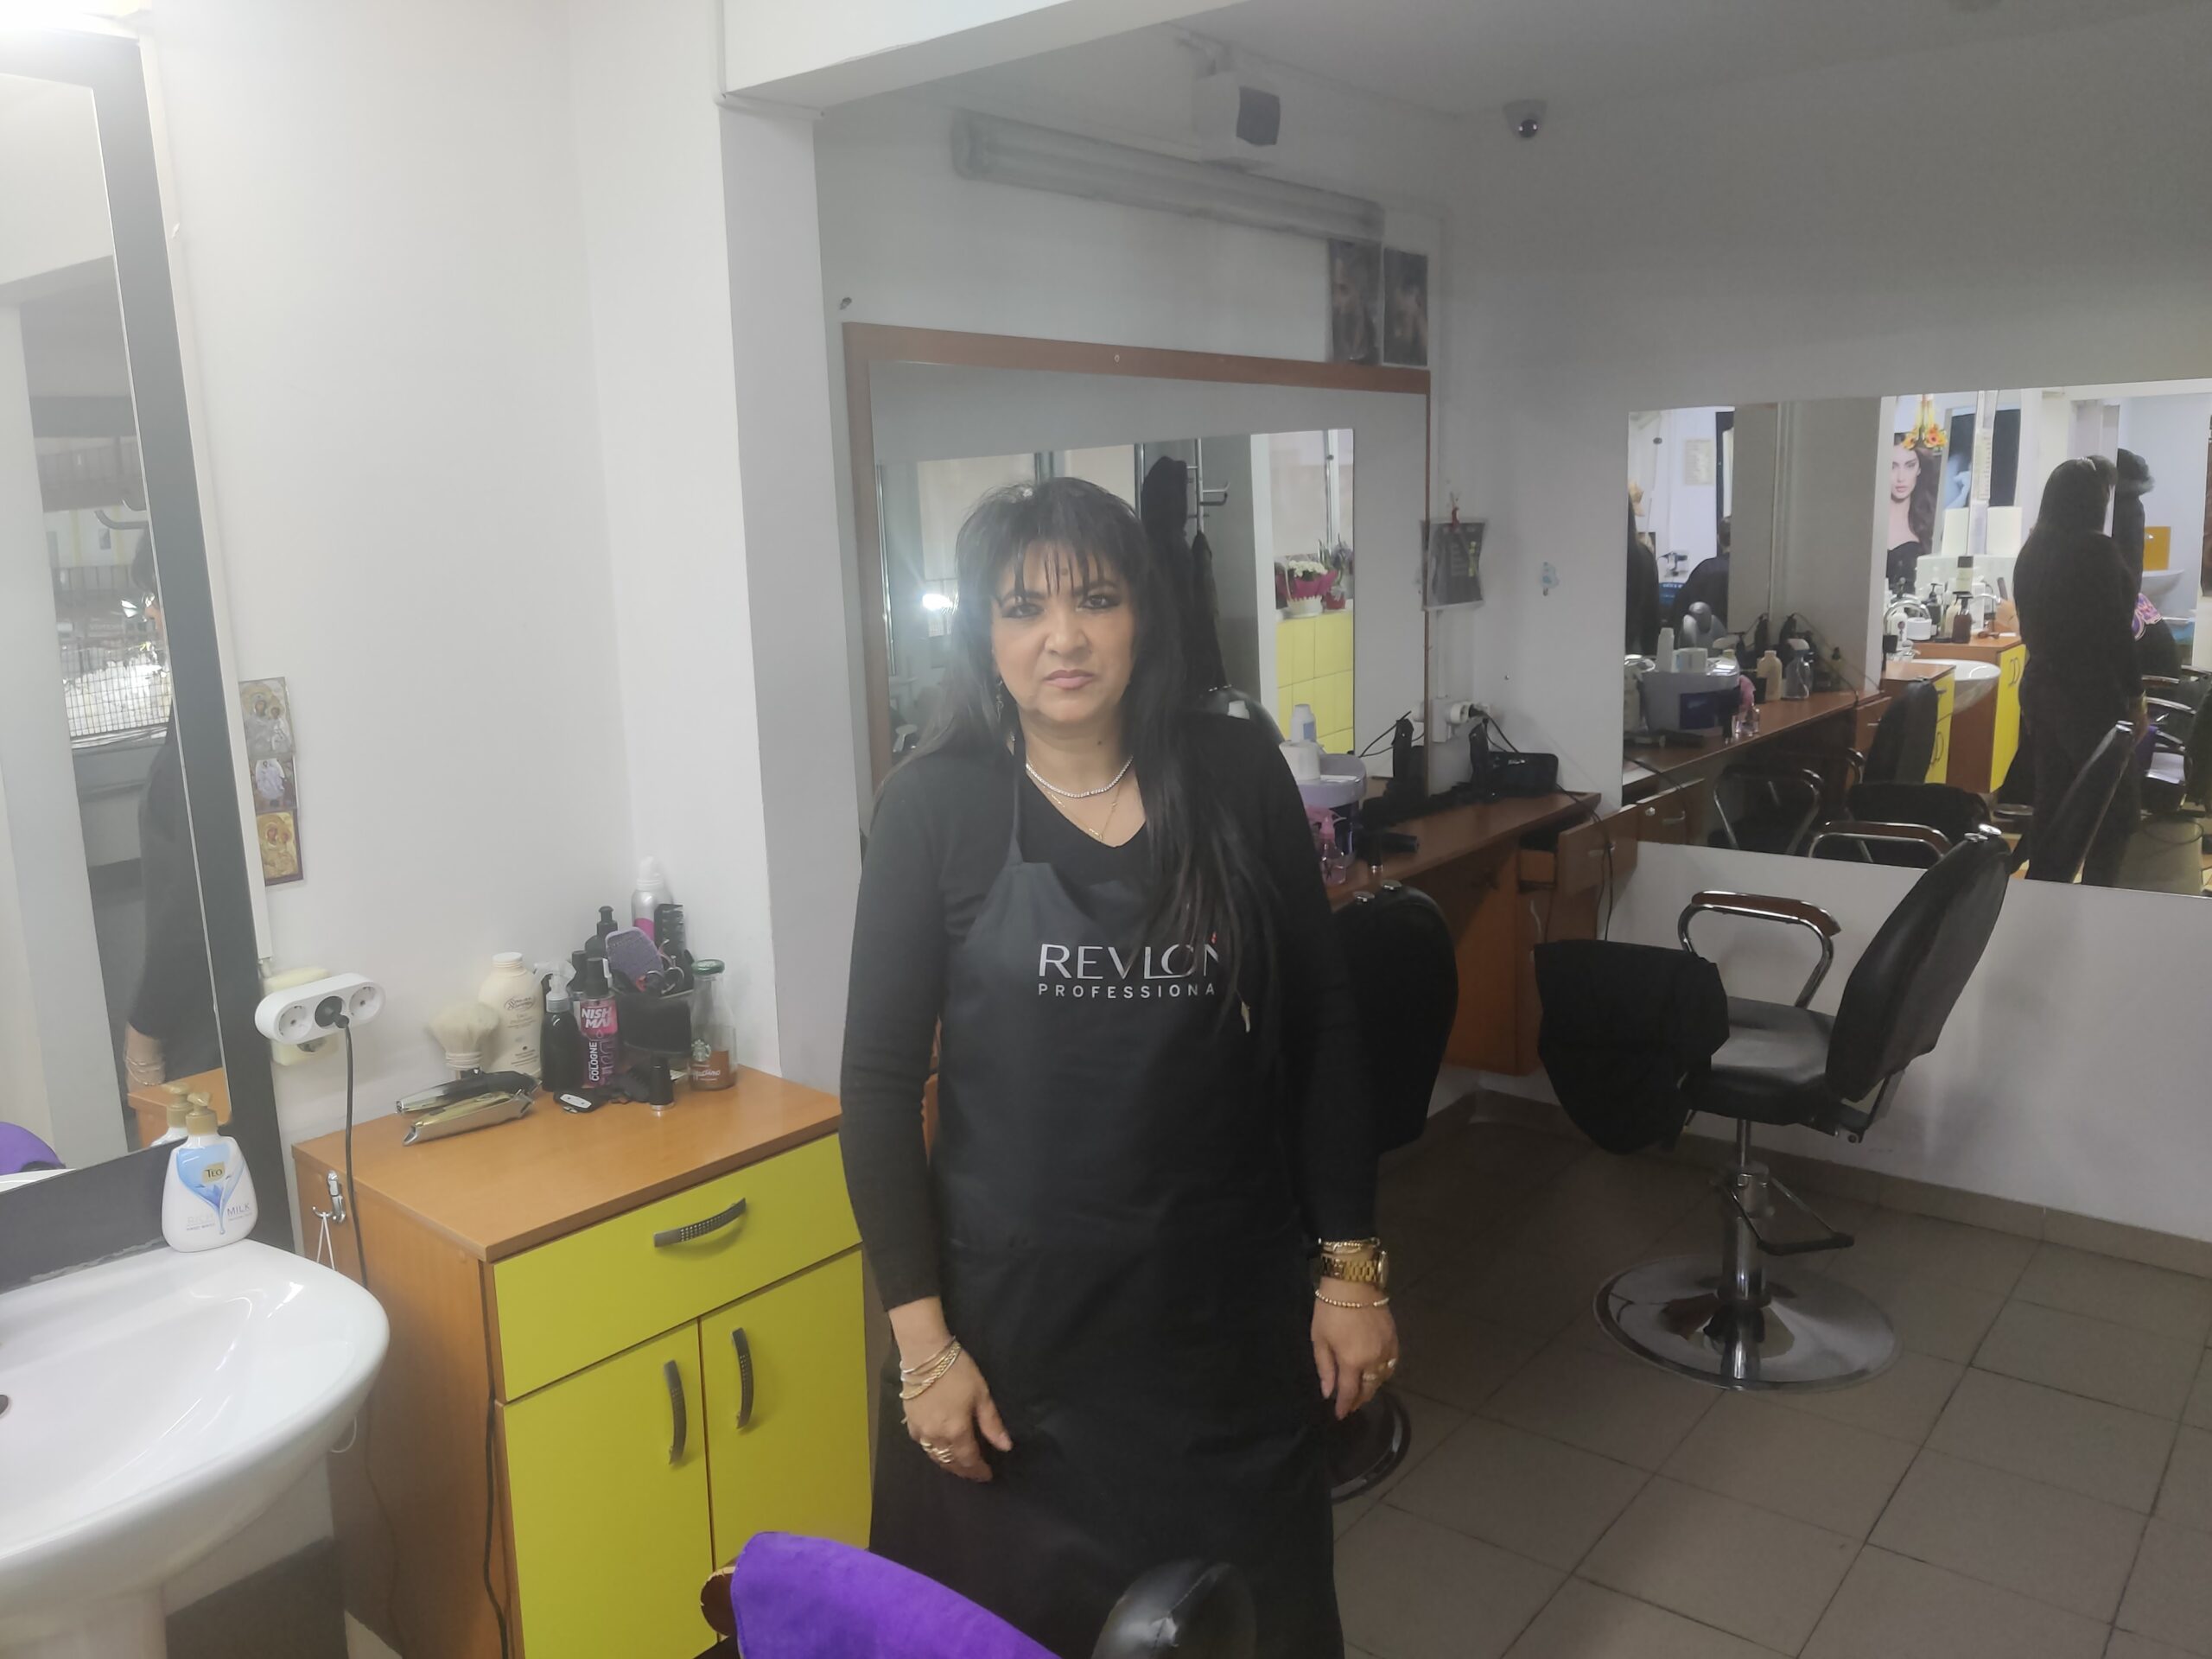 Maricele Bîrlă a venit în București cu visul de a deveni frizer